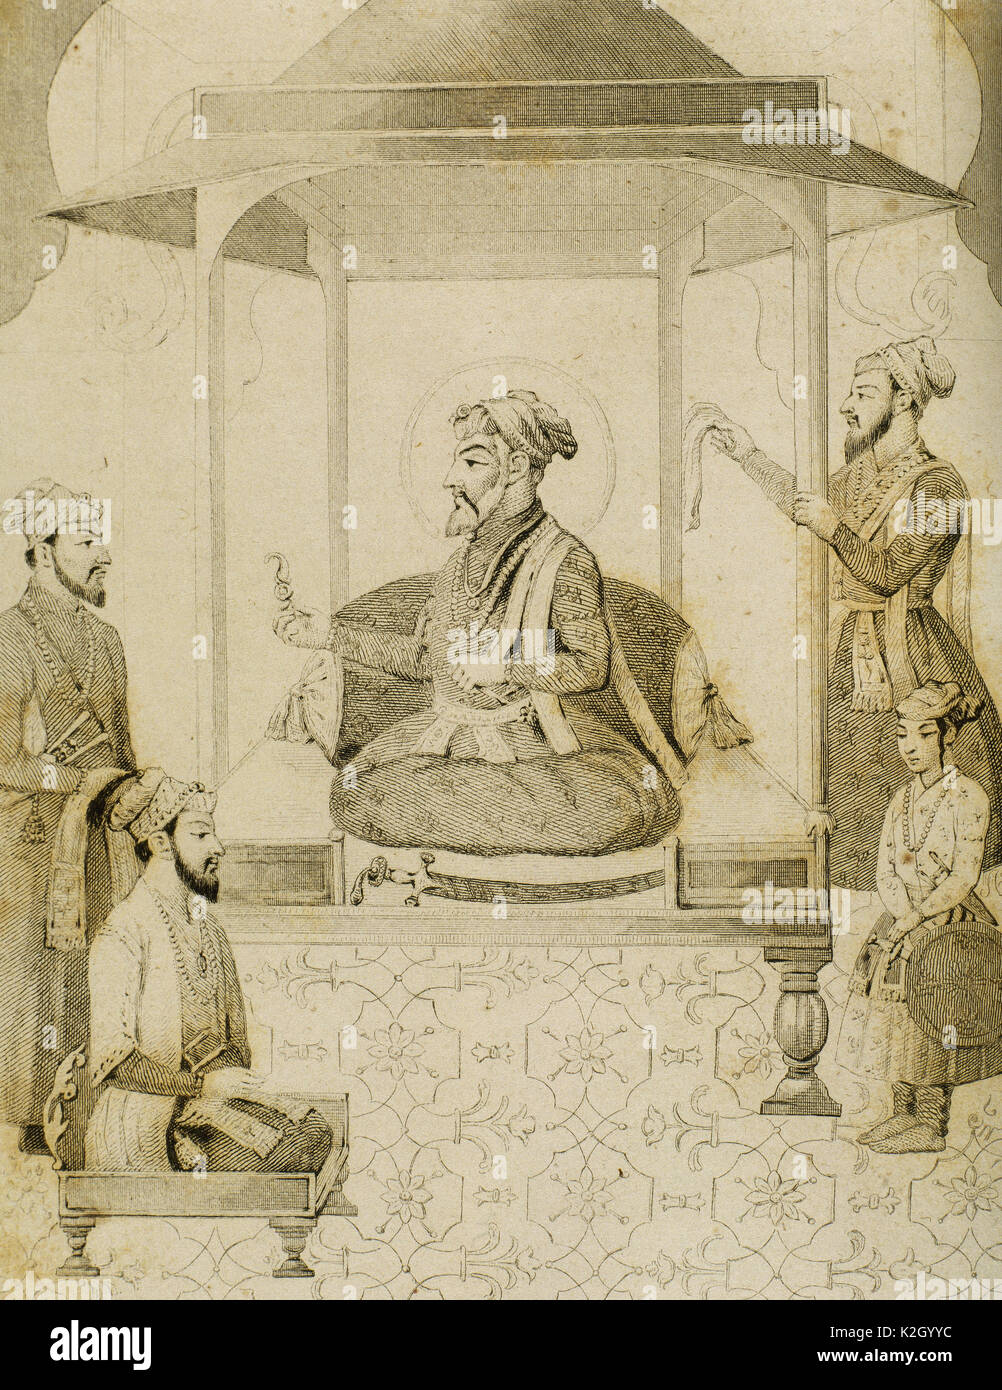 Shah Jahan I (1592-1666). Quinto Emperador Mughal che regnò dal 1628-1658. Egli commissionò molti monumenti, il più noto dei quali è il Taj Mahal di Agra, che entombs sua moglie Mumtaz Mahal. Sha Djahan dando una sede a Dara Shikoh (1615-1659), suo figlio primogenito. India. Incisione di nonio. Lemaitre ha direxit. "Panorama universale, India", 1845. Foto Stock